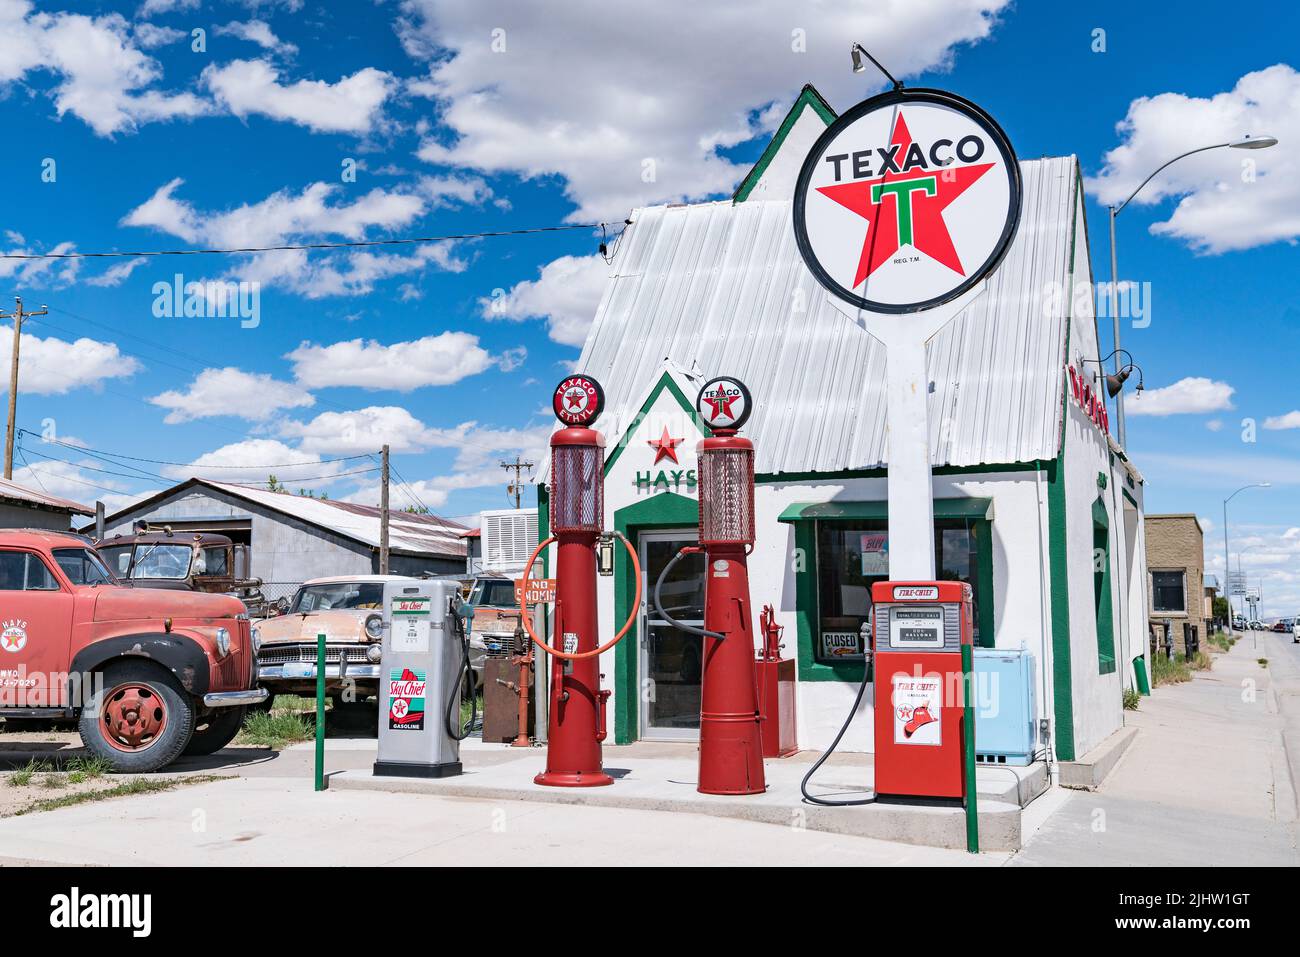 Rawlins, WY - 2 de junio de 2022: Antigua gasolinera Texaco a lo largo de la autopista en Rawlins, Wyoming Foto de stock